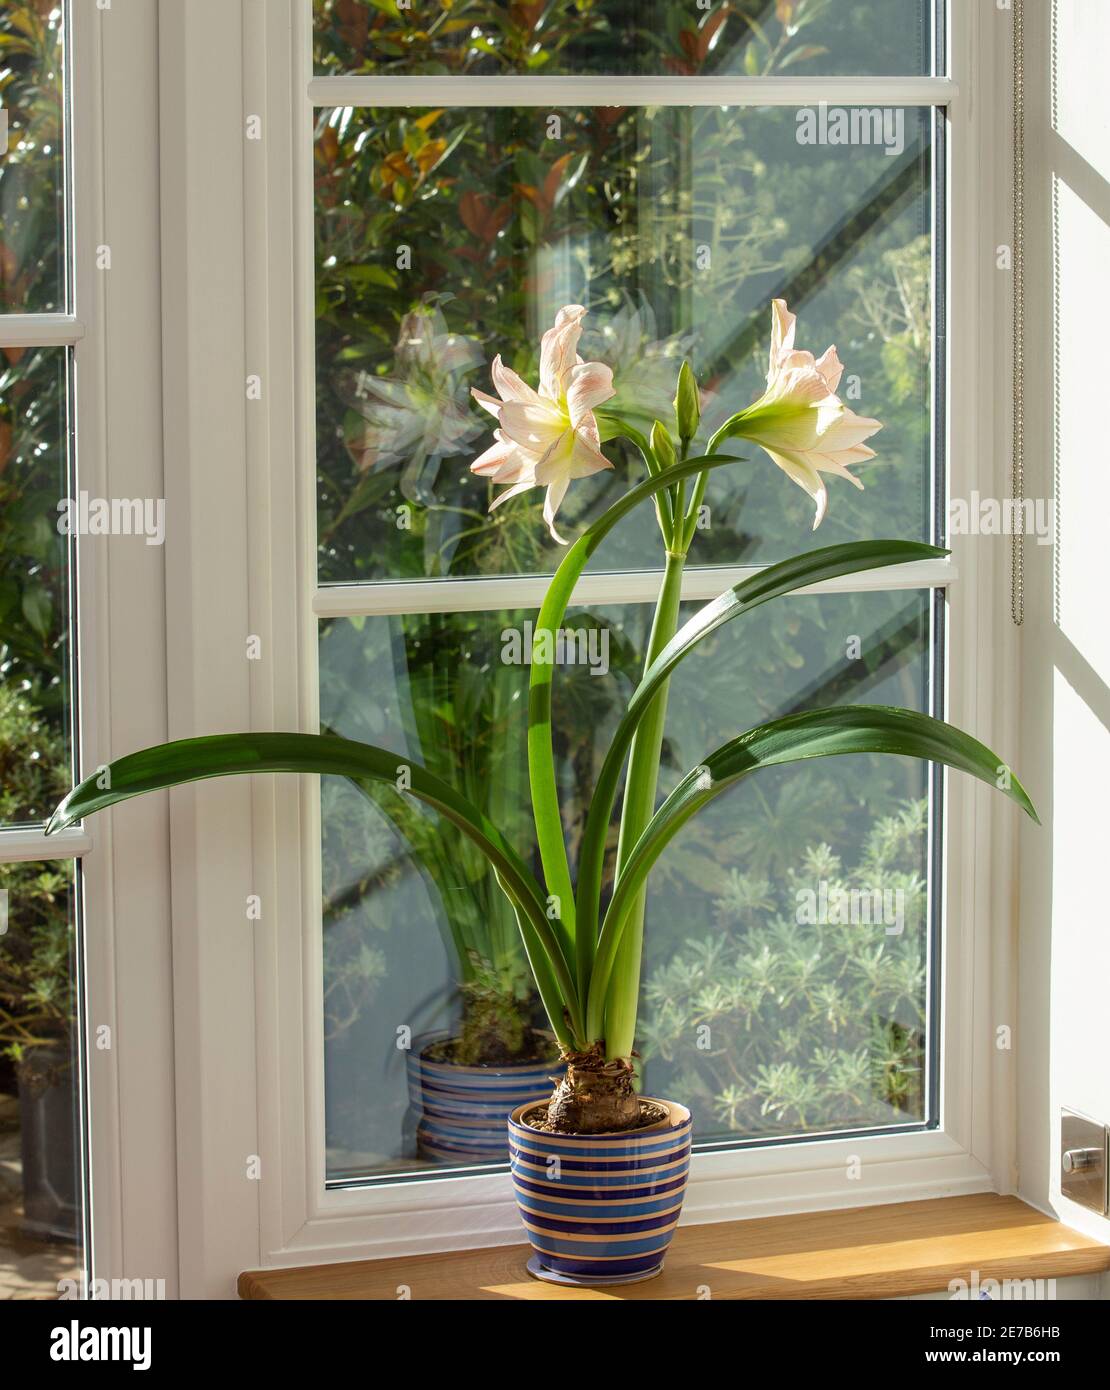 Amaryllis maison plante, pot plante, croissant à l'intérieur sur une fenêtre de rebord Banque D'Images